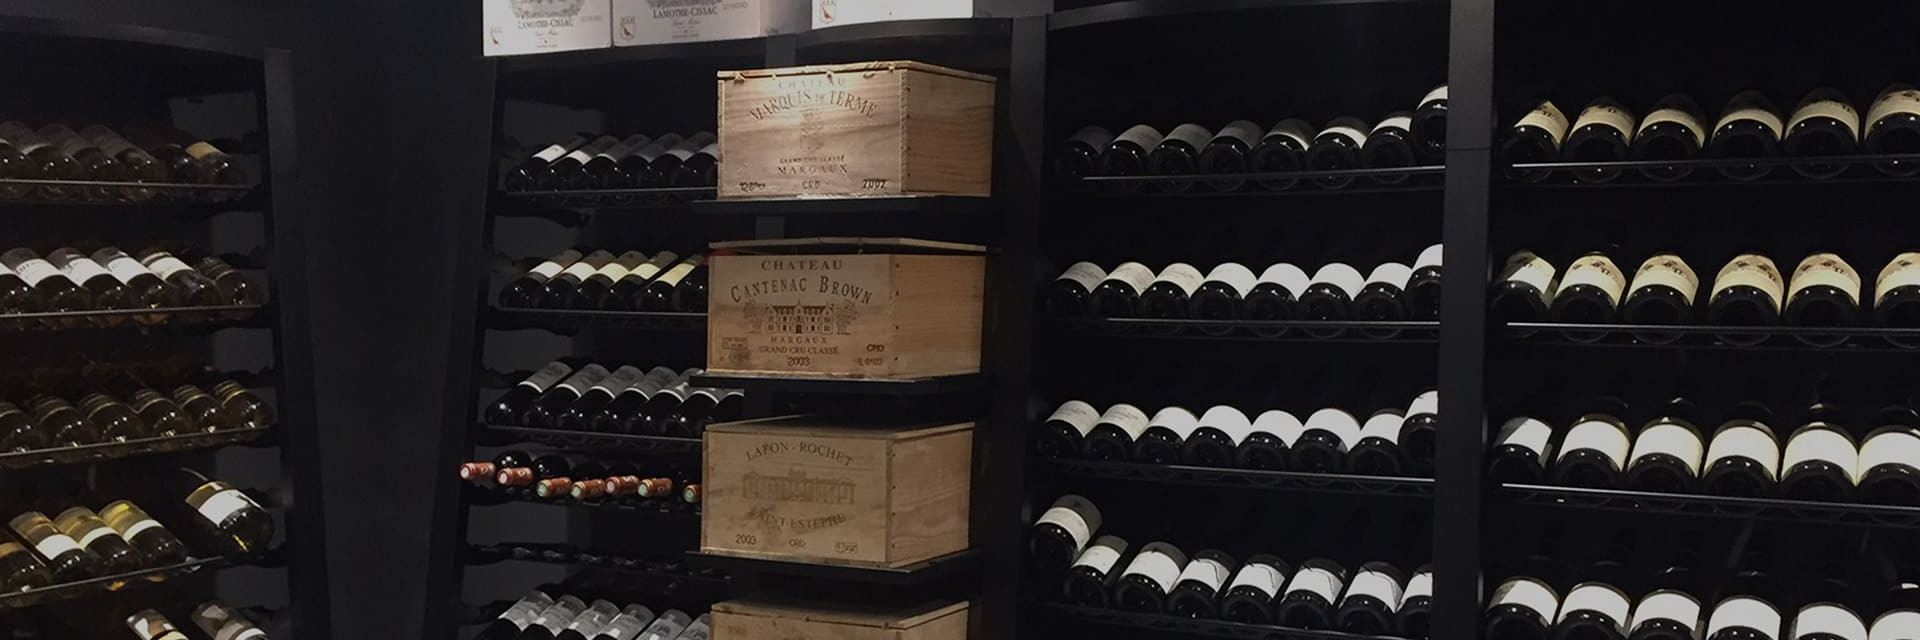 Weinregale aus schwarzem Stahl zur Lagerung von Wein – Großes Weinvolumen zur Lagerung – Viele Möglichkeiten zur Flaschenaufbewahrung und -präsentation. modulosteel eurocave